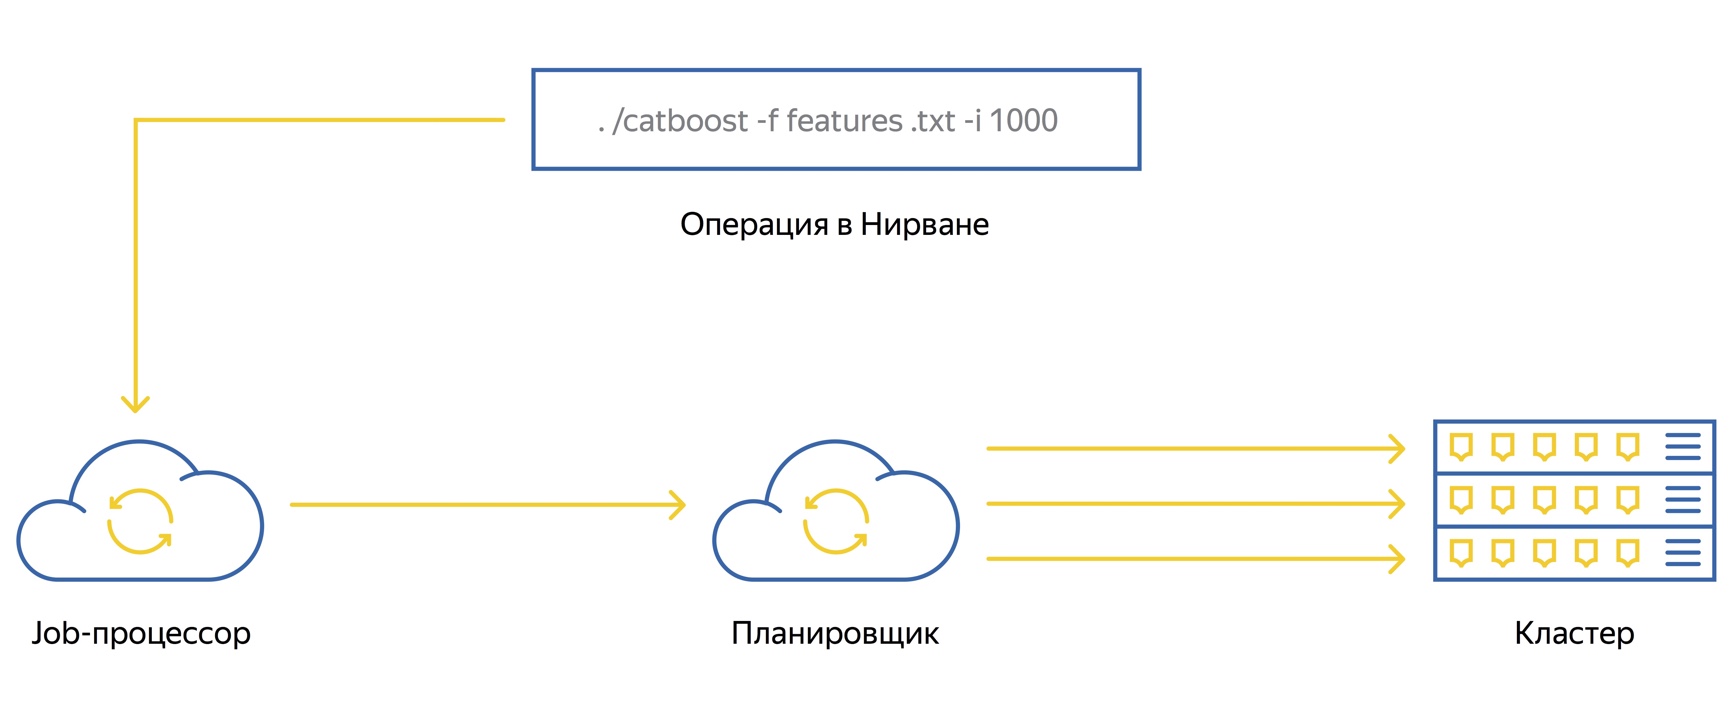 Познаём Нирвану – универсальную вычислительную платформу Яндекса - 4